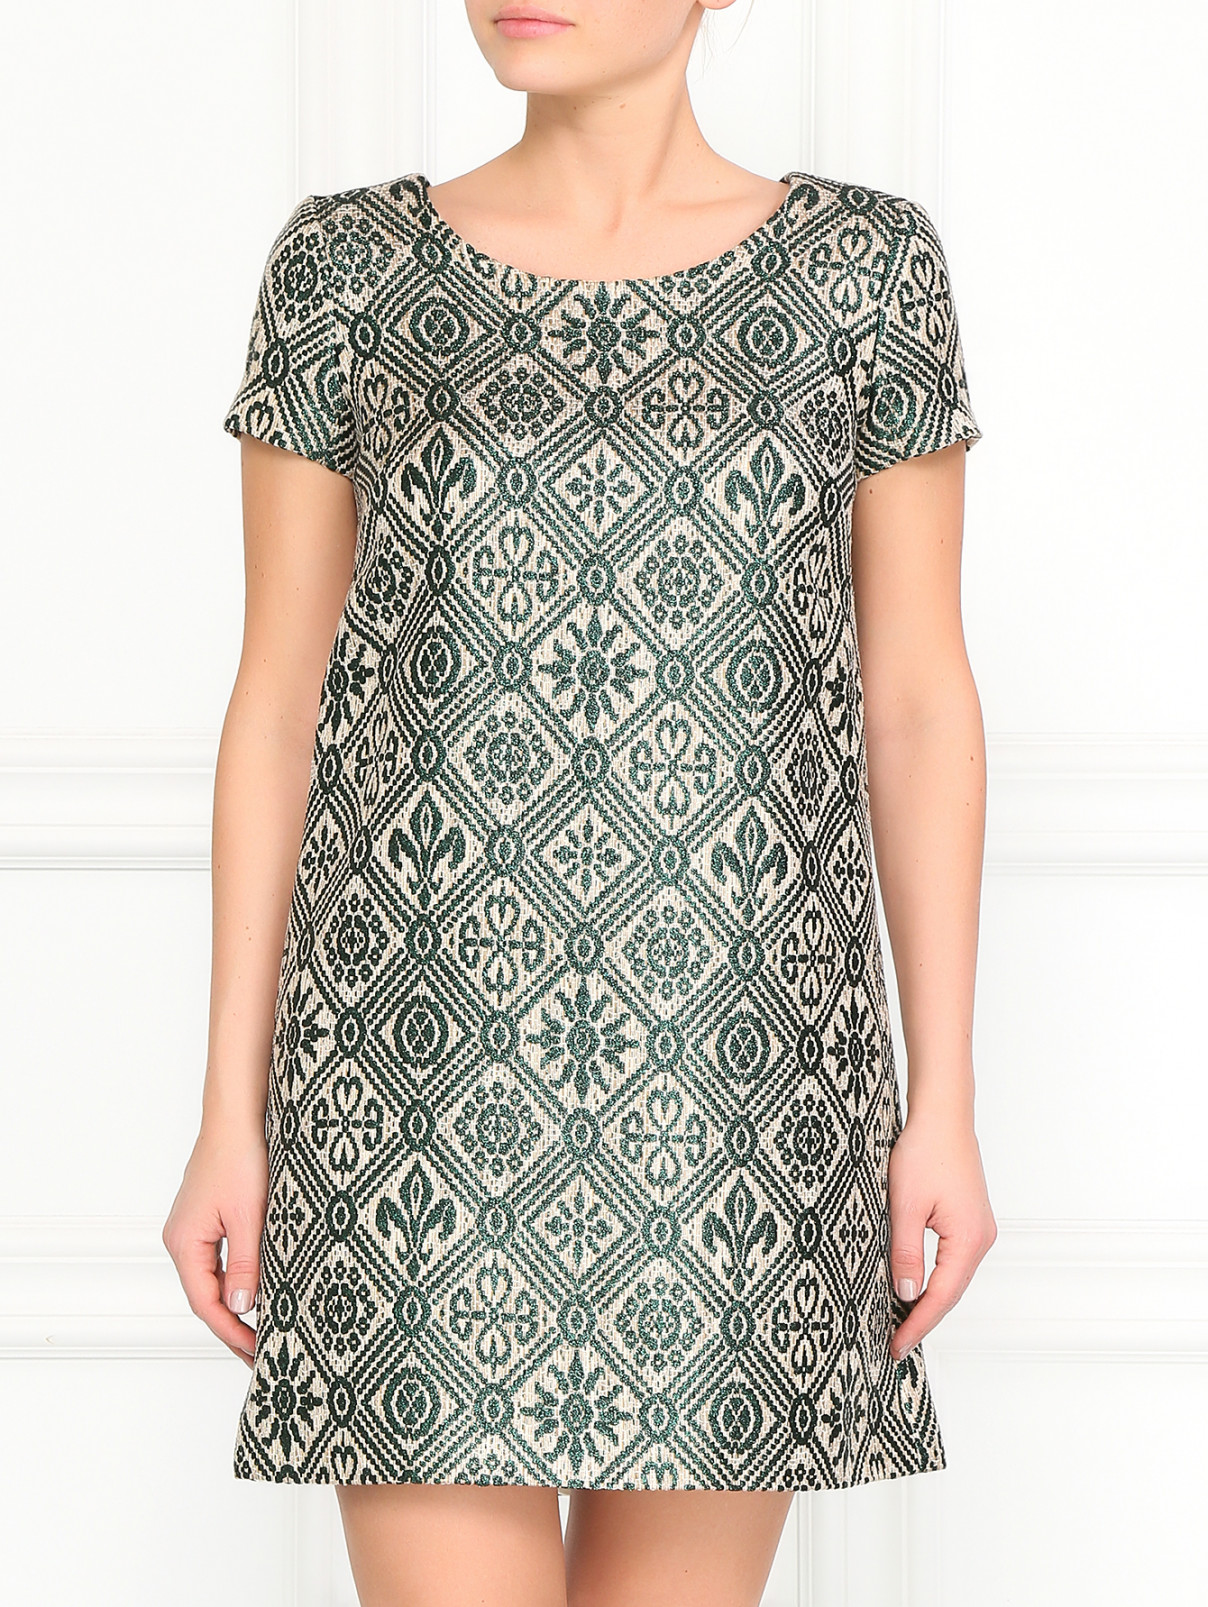 Мини-платье с принтом Vanda Catucci  –  Модель Верх-Низ  – Цвет:  Зеленый